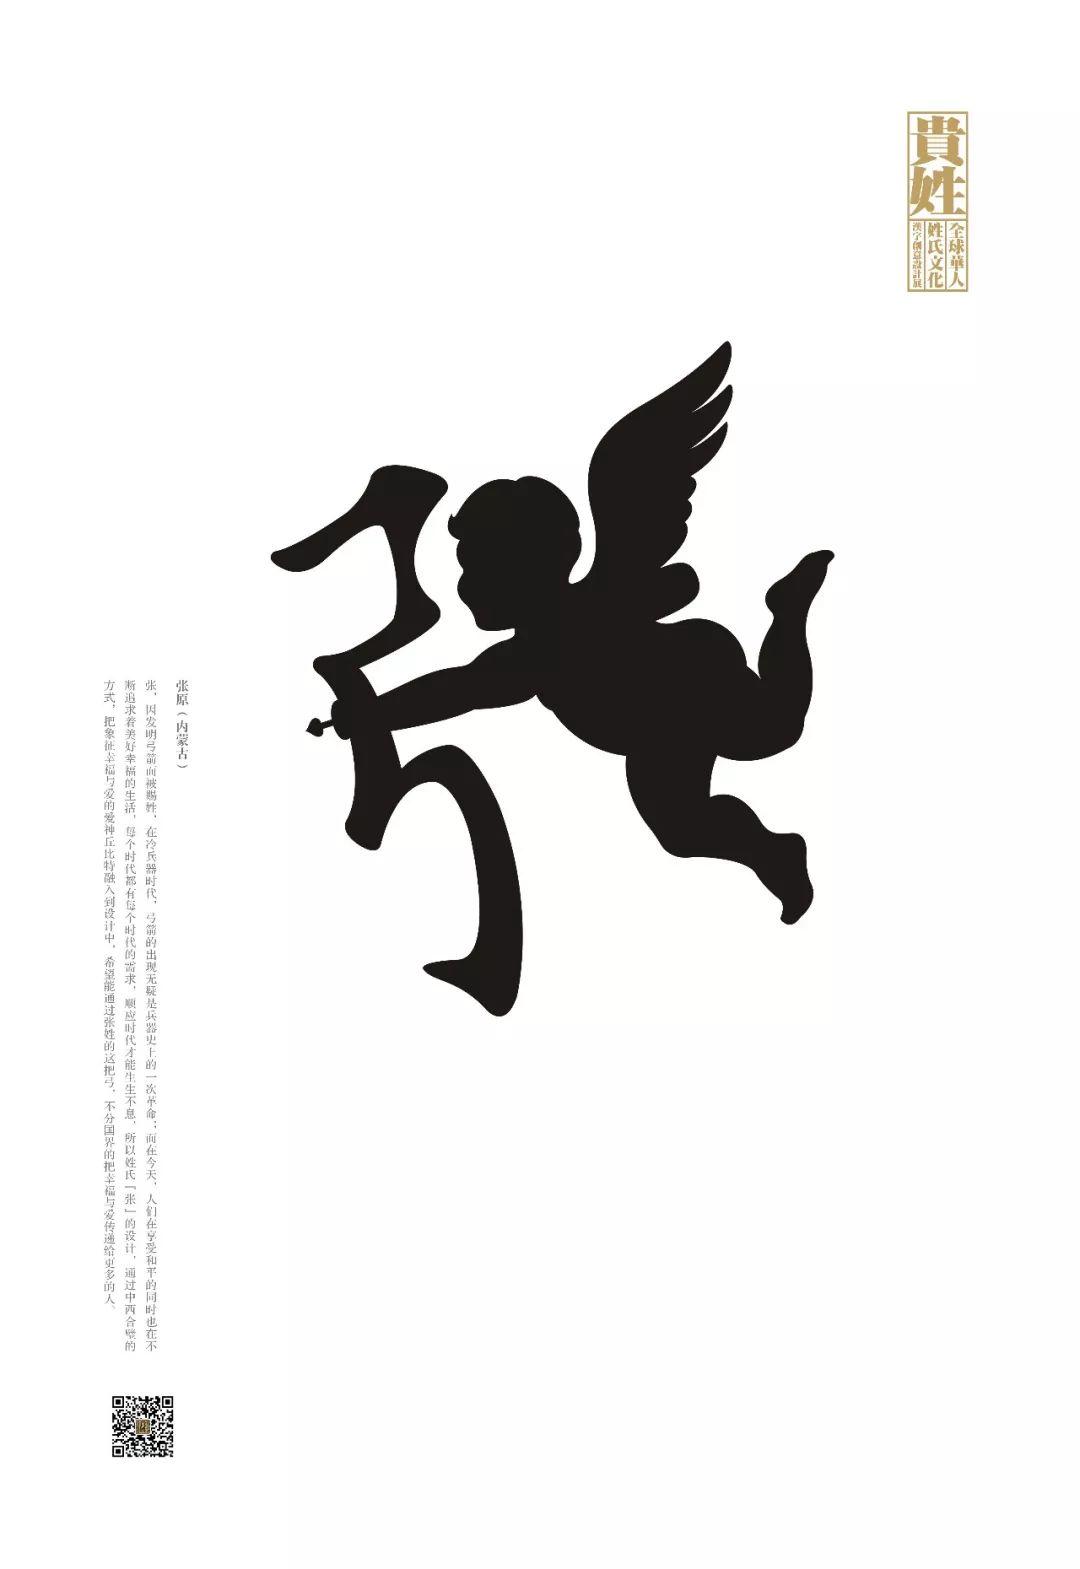 【贵姓】全球华人姓氏文化汉字创意设计展终评作品